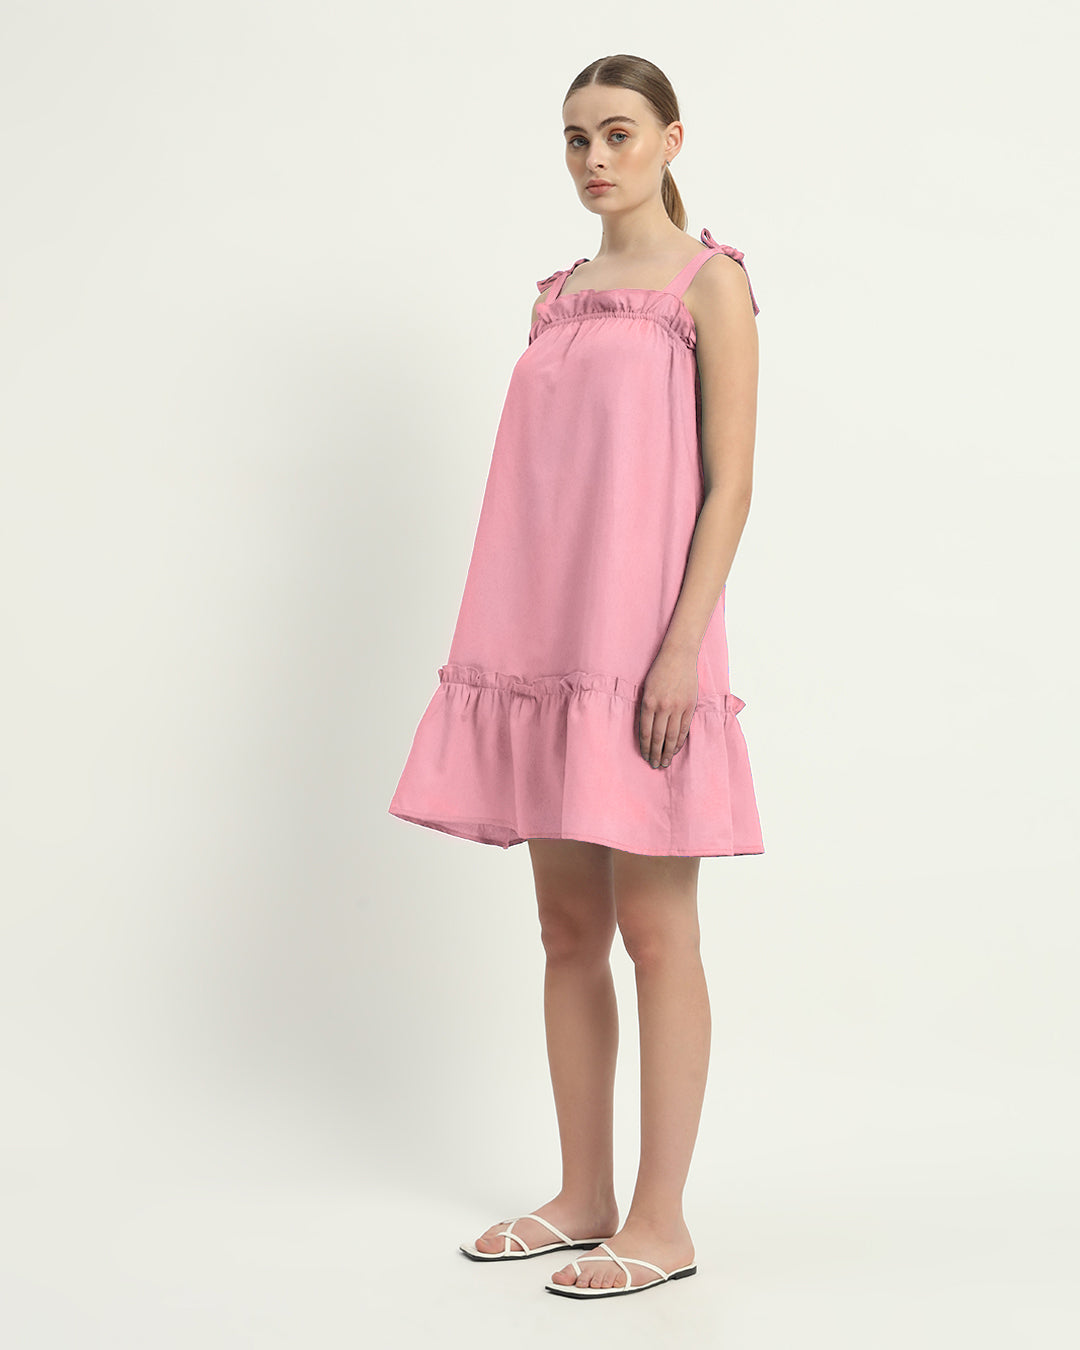 The Fondant Pink Amalfi Cotton Dress